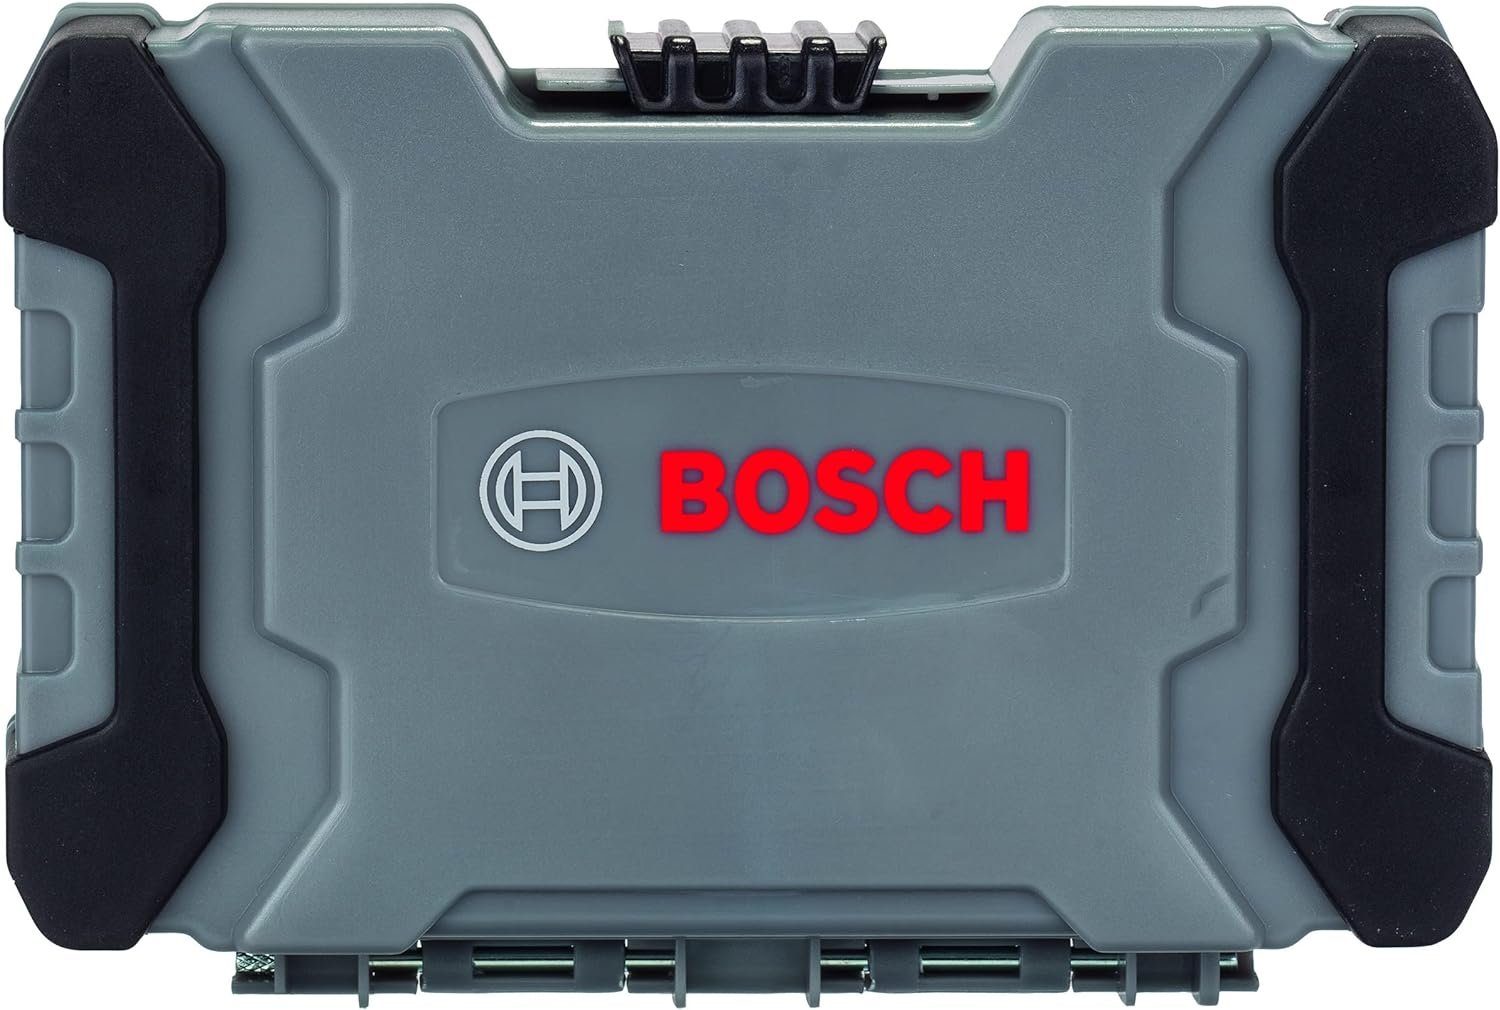 Bit-Set und Bosch Bithalter und inkl. 35-teilig BOSCH Bohrer- PVC-B in PRO Bitset Bohrer- Metal